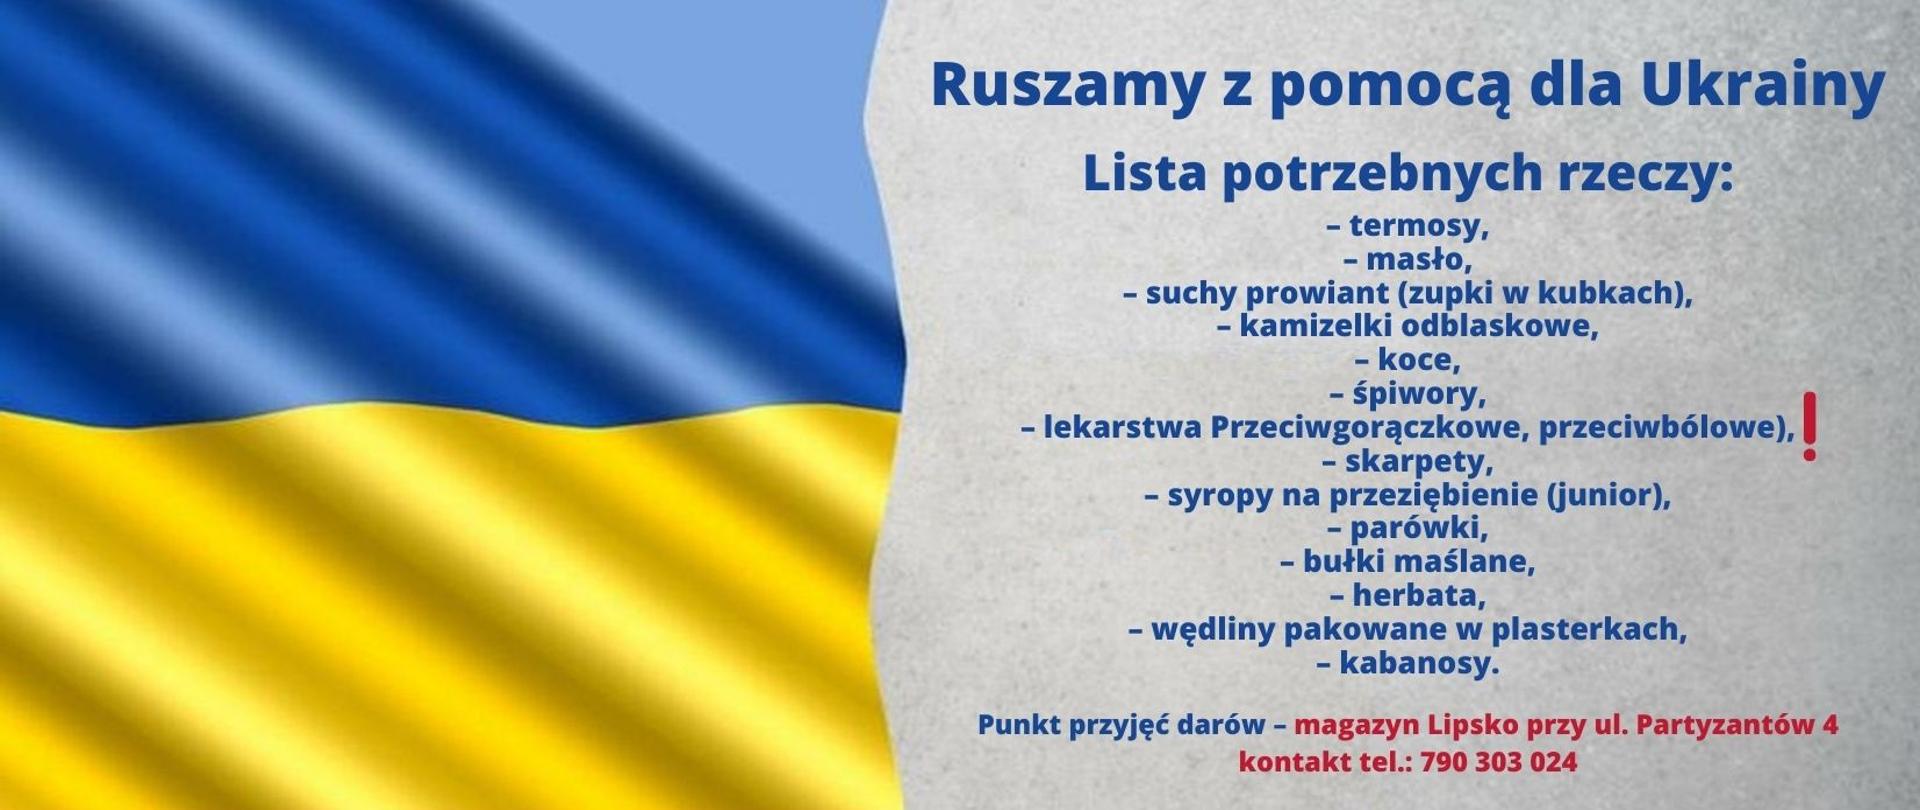 Lista potrzebnych rzeczy, które zostaną przekazane mieszkańcom Ukrainy, lista na szarym tle, z lewej strony grafiki flaga Ukrainy.